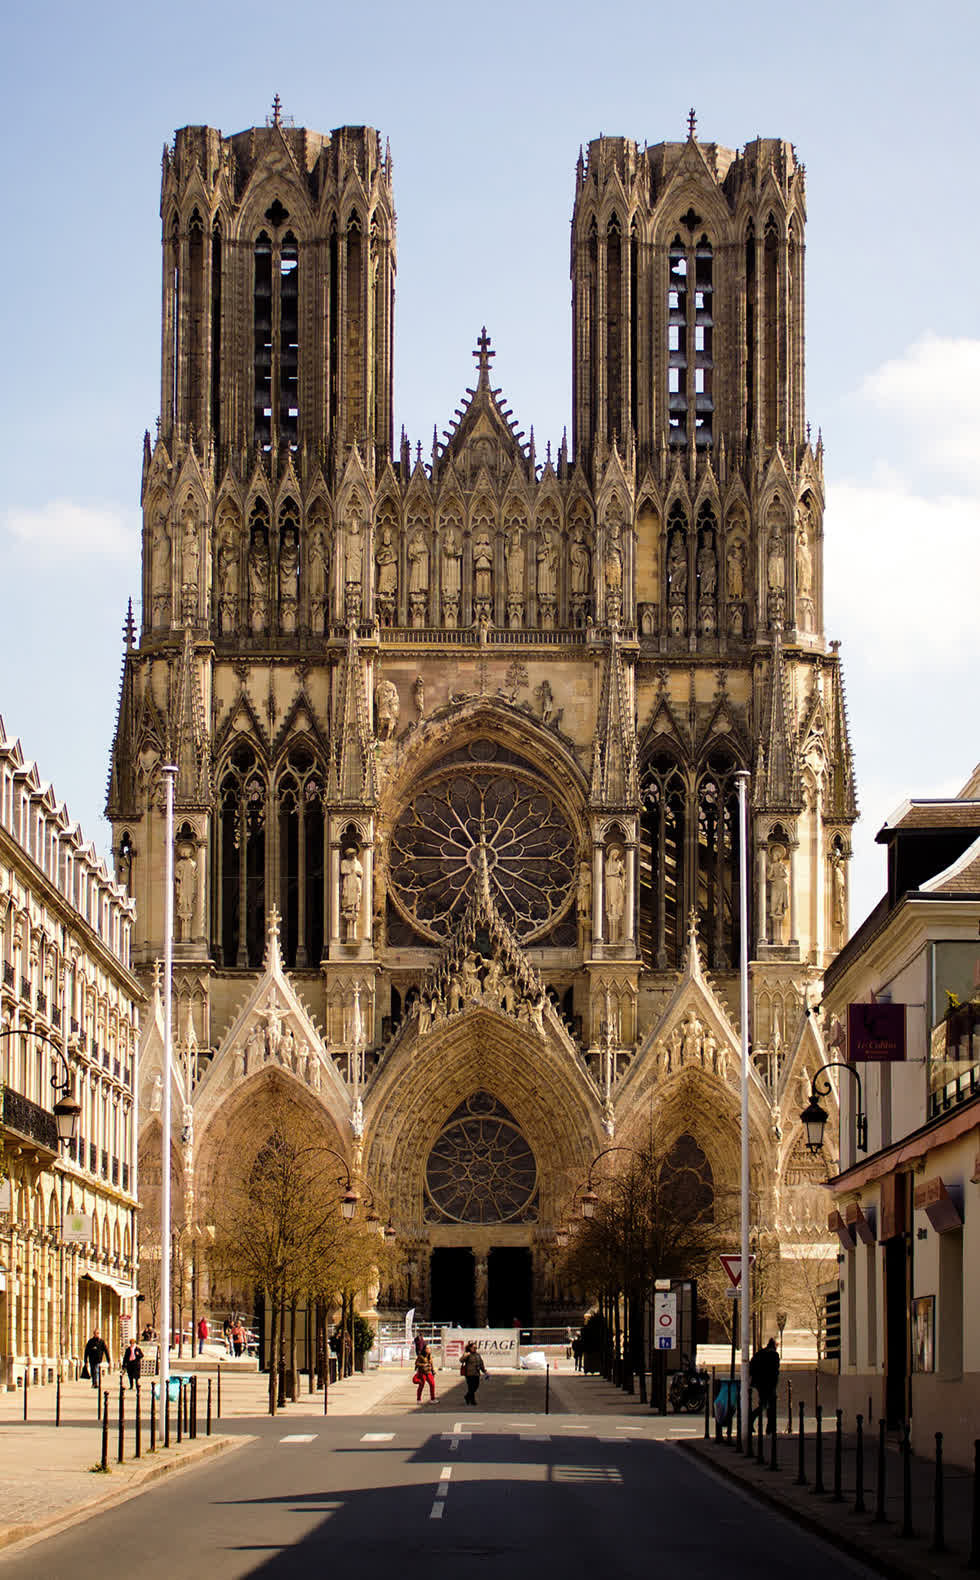   Reims Cathedral. Những gì chúng ta biết là kiến ​​trúc Gothic ban đầu được đặt tên là Opus Francigenum, hoặc “công trình Pháp”, vì nó có nguồn gốc từ thời Trung cổ ở Pháp, giữa những năm 900 và 1300. Chỉ trong thời gian Khai sáng, cái tên “Gothic” về việc tham khảo kiến ​​trúc hoành trángvà vĩ đại được tạo ra trong giai đoạn đó.   Các tác phẩm Gothic phần lớn có liên quan đến các tòa nhà giáo hội – nhà thờ với mái vòm và vòm hầm. Hầu hết các tòa nhà Gothic được coi là Di sản Thế giới được UNESCO công nhận, chẳng hạn như Nhà thờ Đức Bà và Nhà thờ Reims. Ảnh: Johan Bakker.  